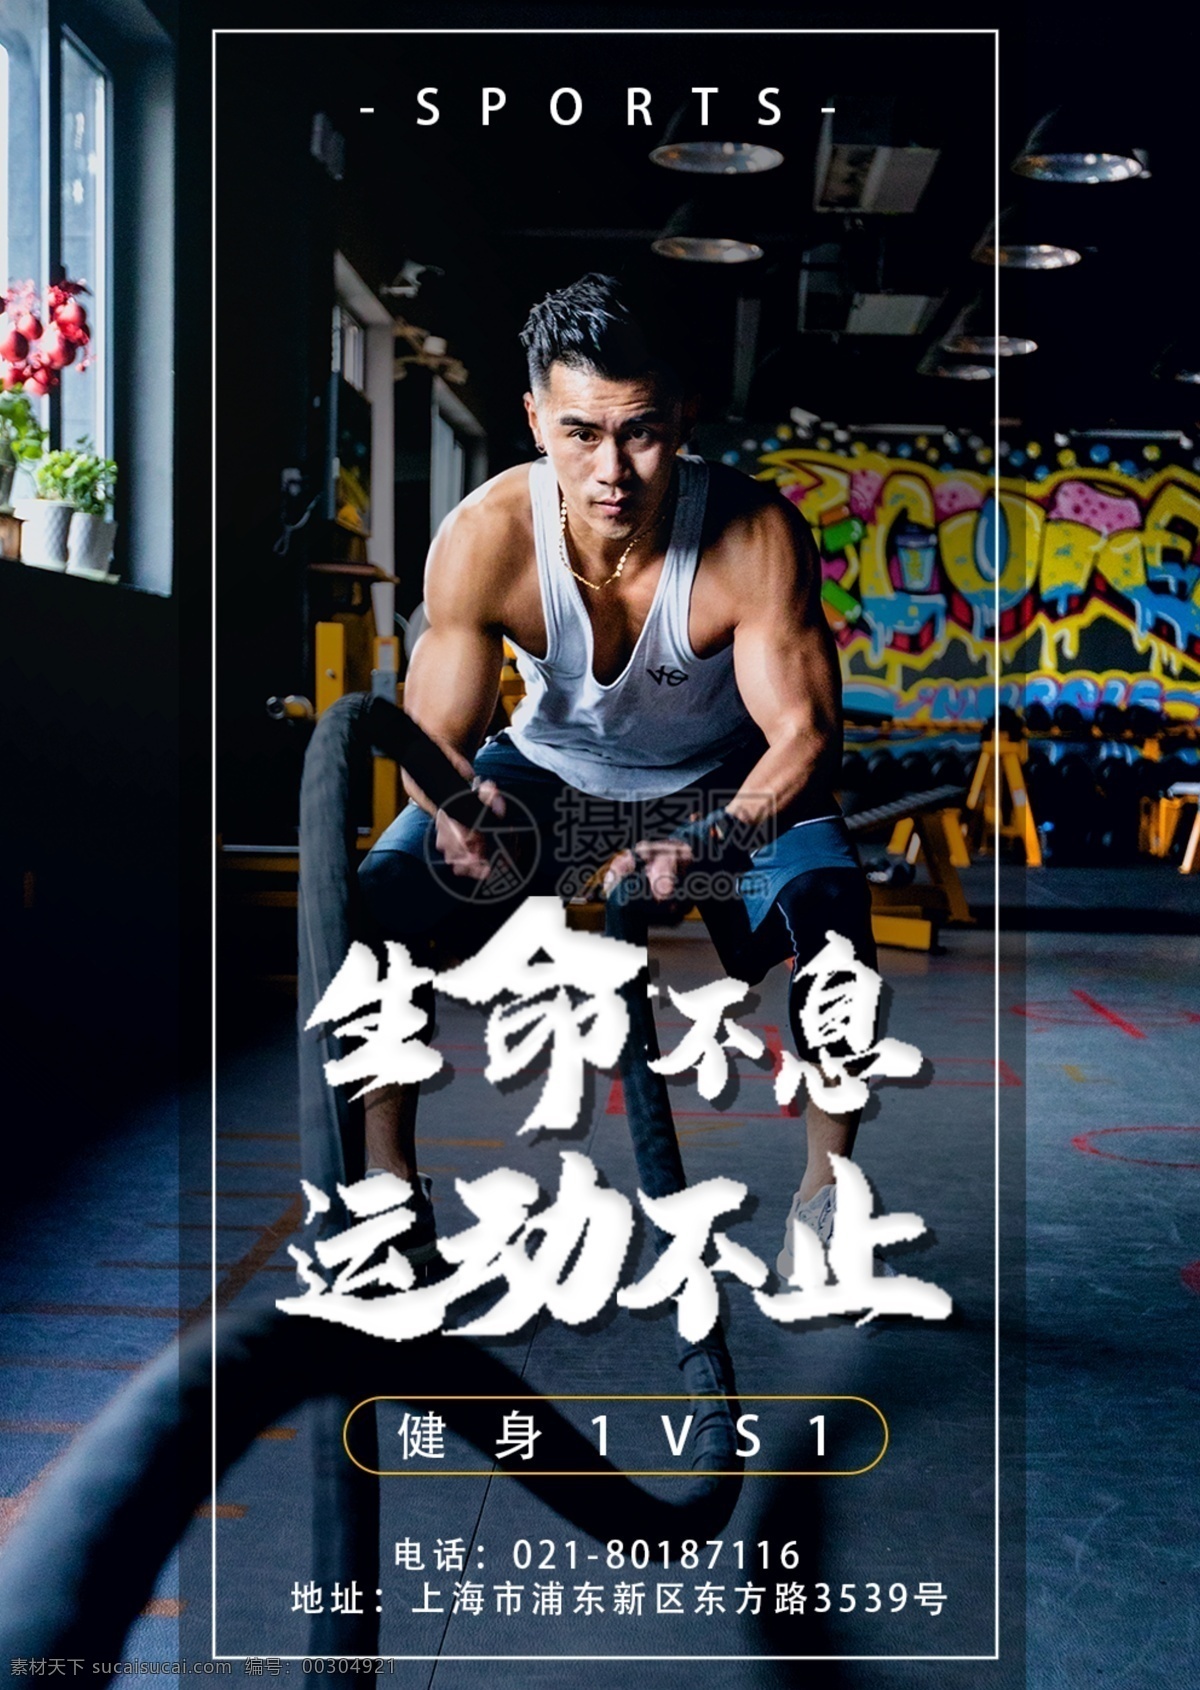 生命不息 运动 不止 健身 海报 有氧运动 私教 教练 肌肉 健身房 健身俱乐部 生命在于运动 猛男训练 健身运动海报